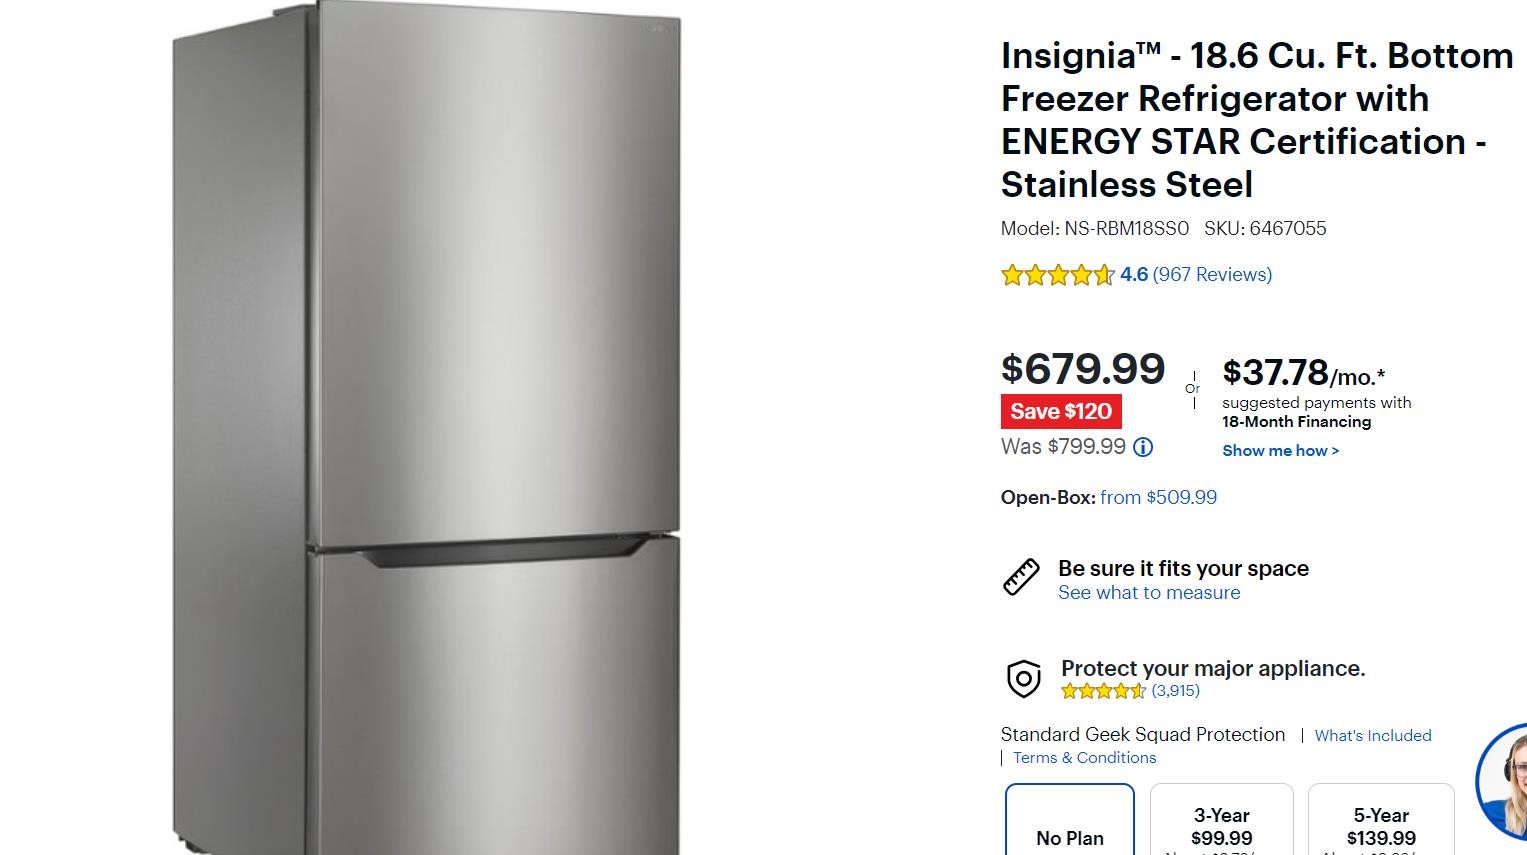 Insignia 18.6 Cu. Ft. Bottom Freezer Refrigerator